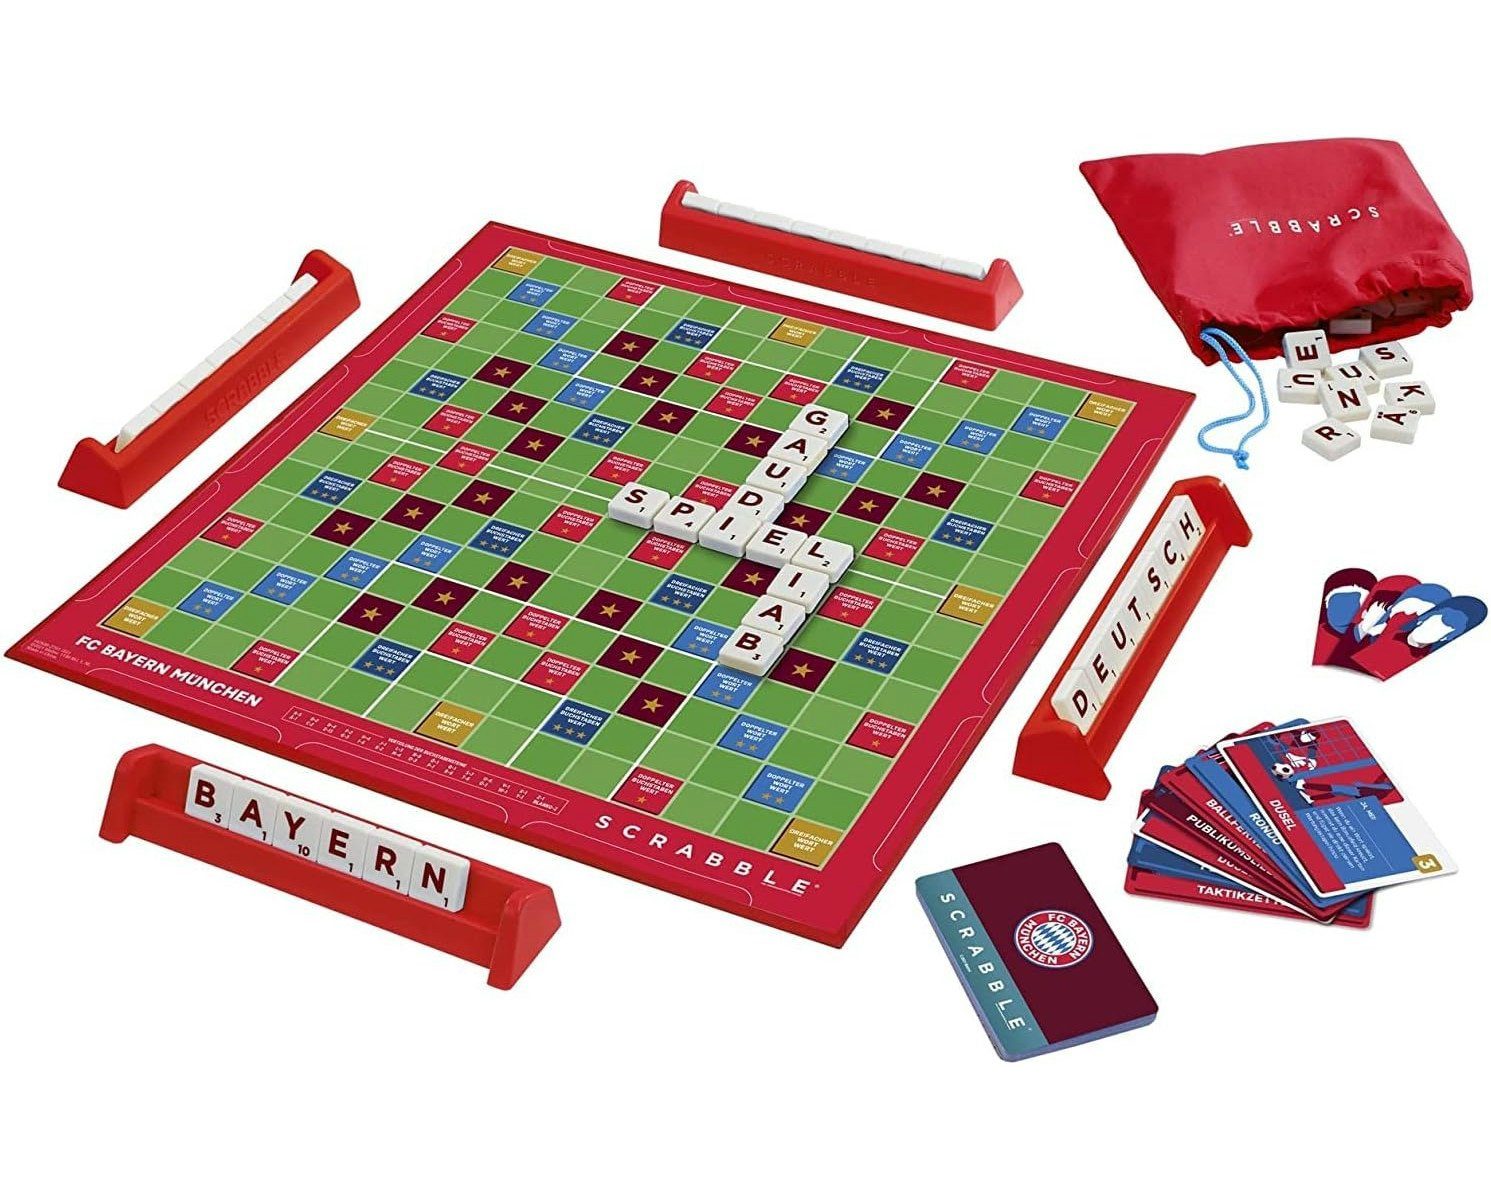 Spiel, & Scrabble + Brettspiel - Bayern games München Würfelbecher UNO Mattel FC